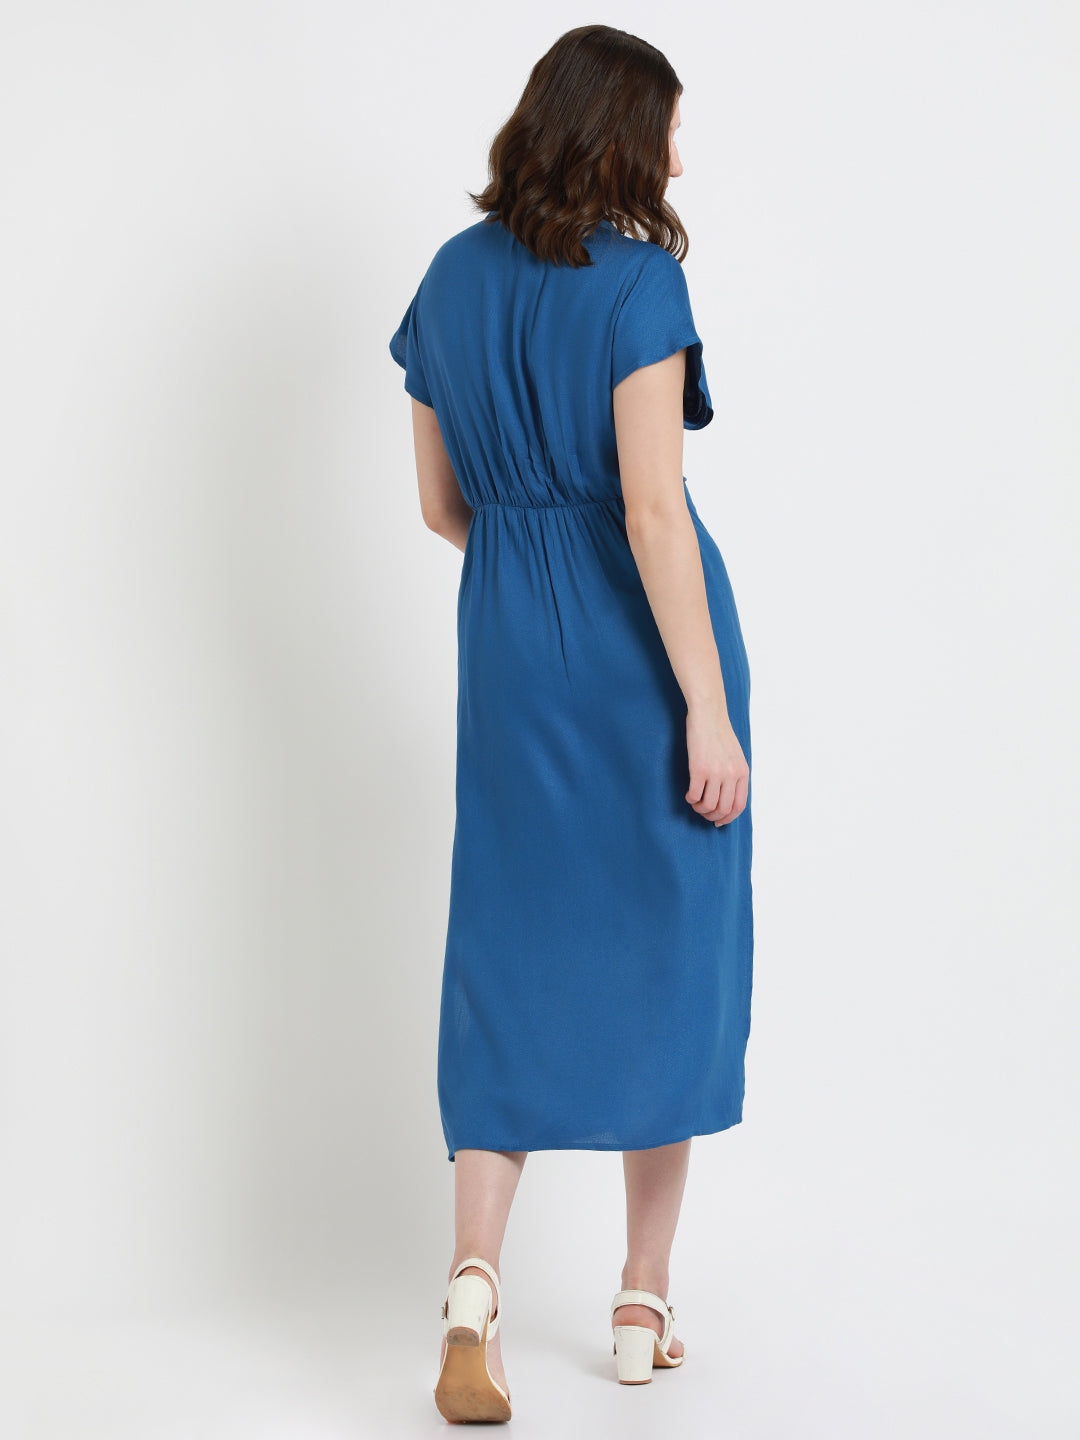 DL Woman Shirt Collar Regular Fit Solid Blue Dress